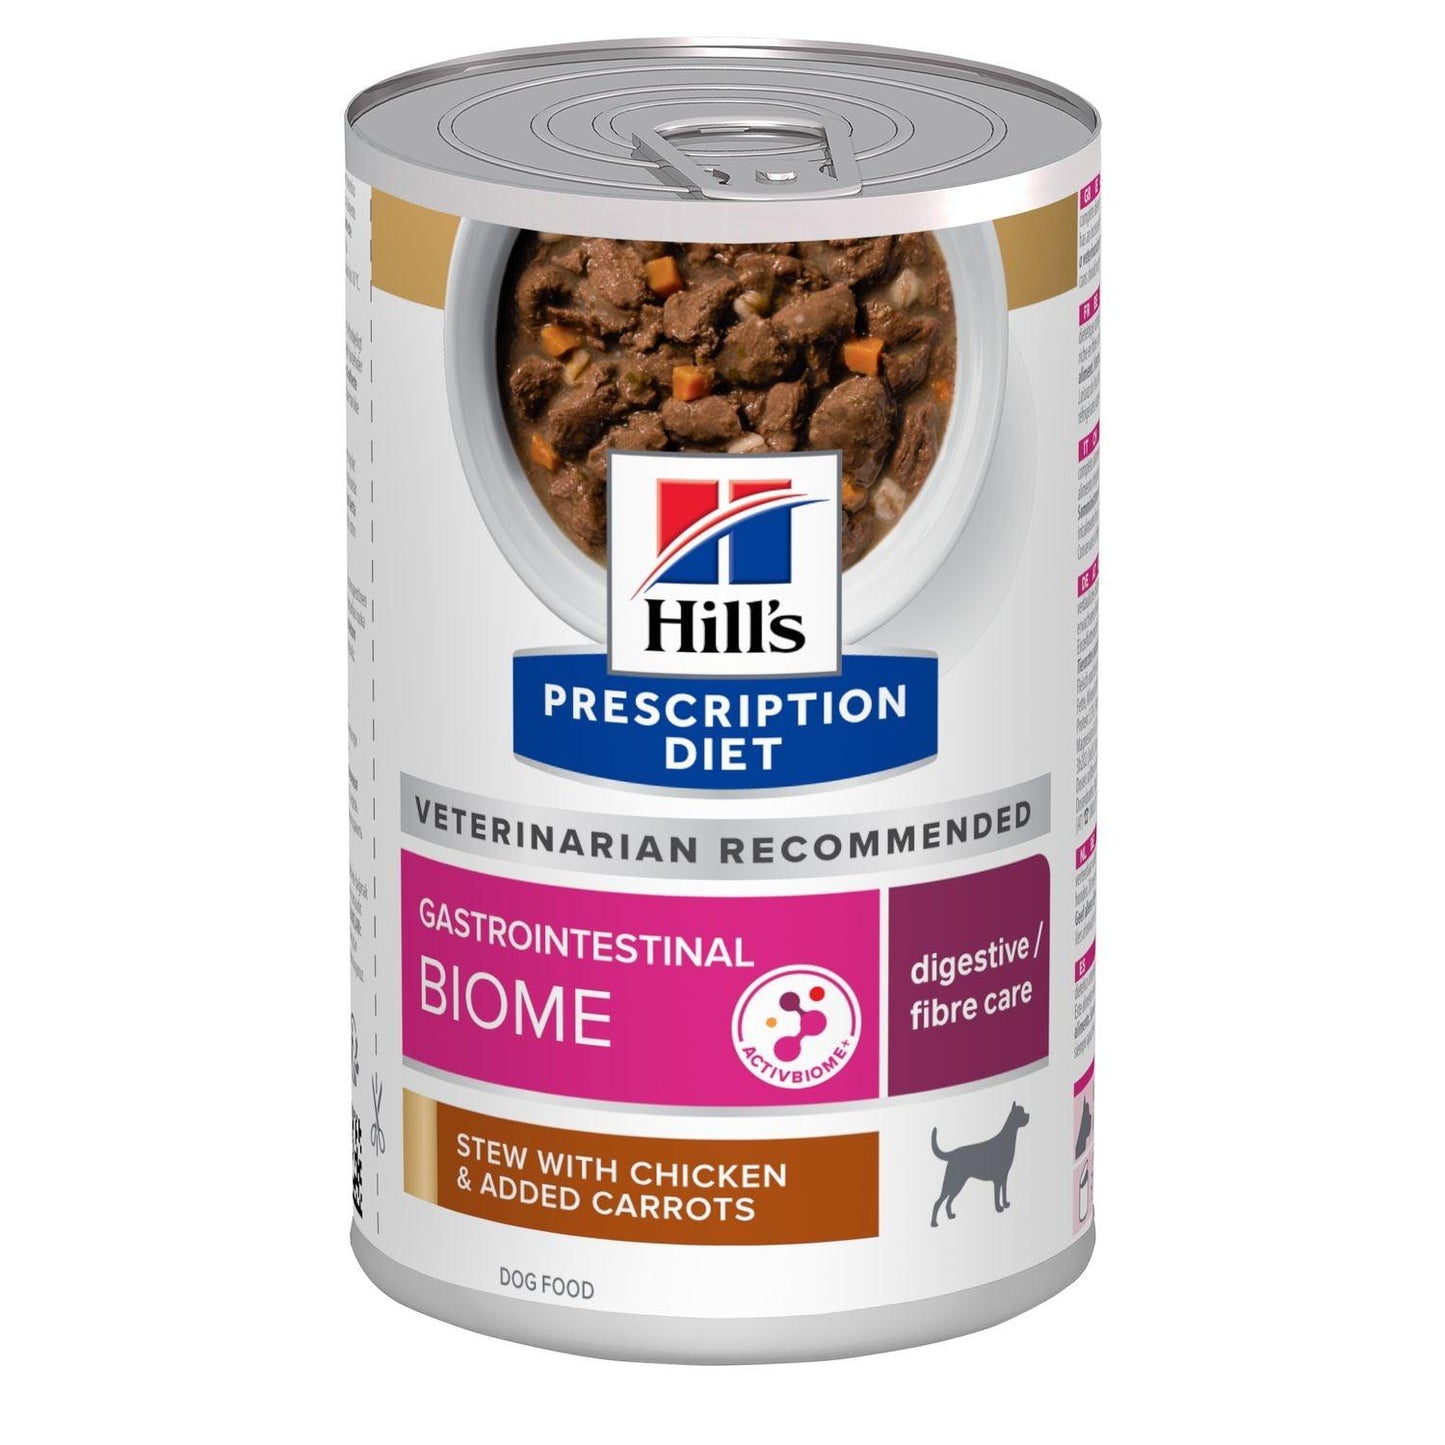 Canine Gastrointestinal Biome Ragout - Hill's Prescription Diet - Alter:Adult, Alter:Senior, Erkrankung:Magen-Darm, Futterart:Nass, Geschmack:Huhn, Tierart:Hund - Marigin AG Onlineshop für Tierbedarf